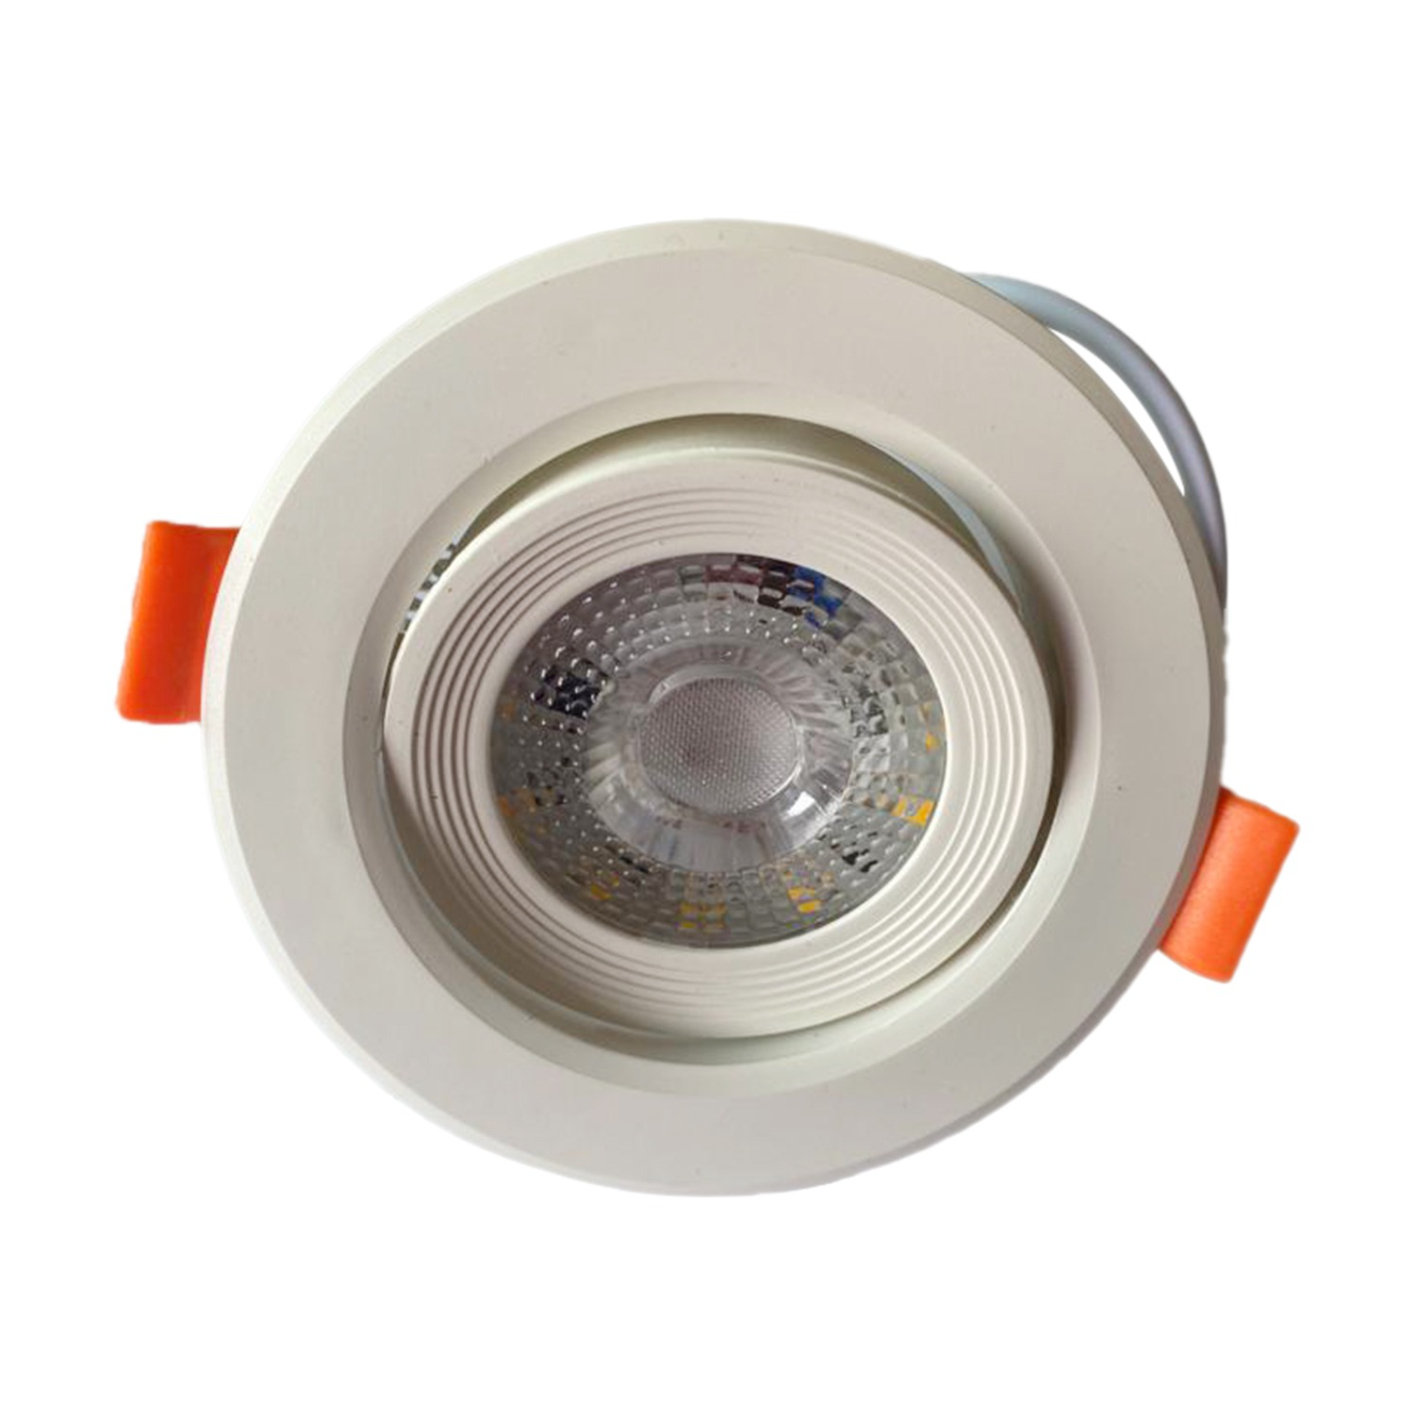 Raspo LED Downlight 5W Lamp white AC 170-265V Spotlight Light Indoor Down Light